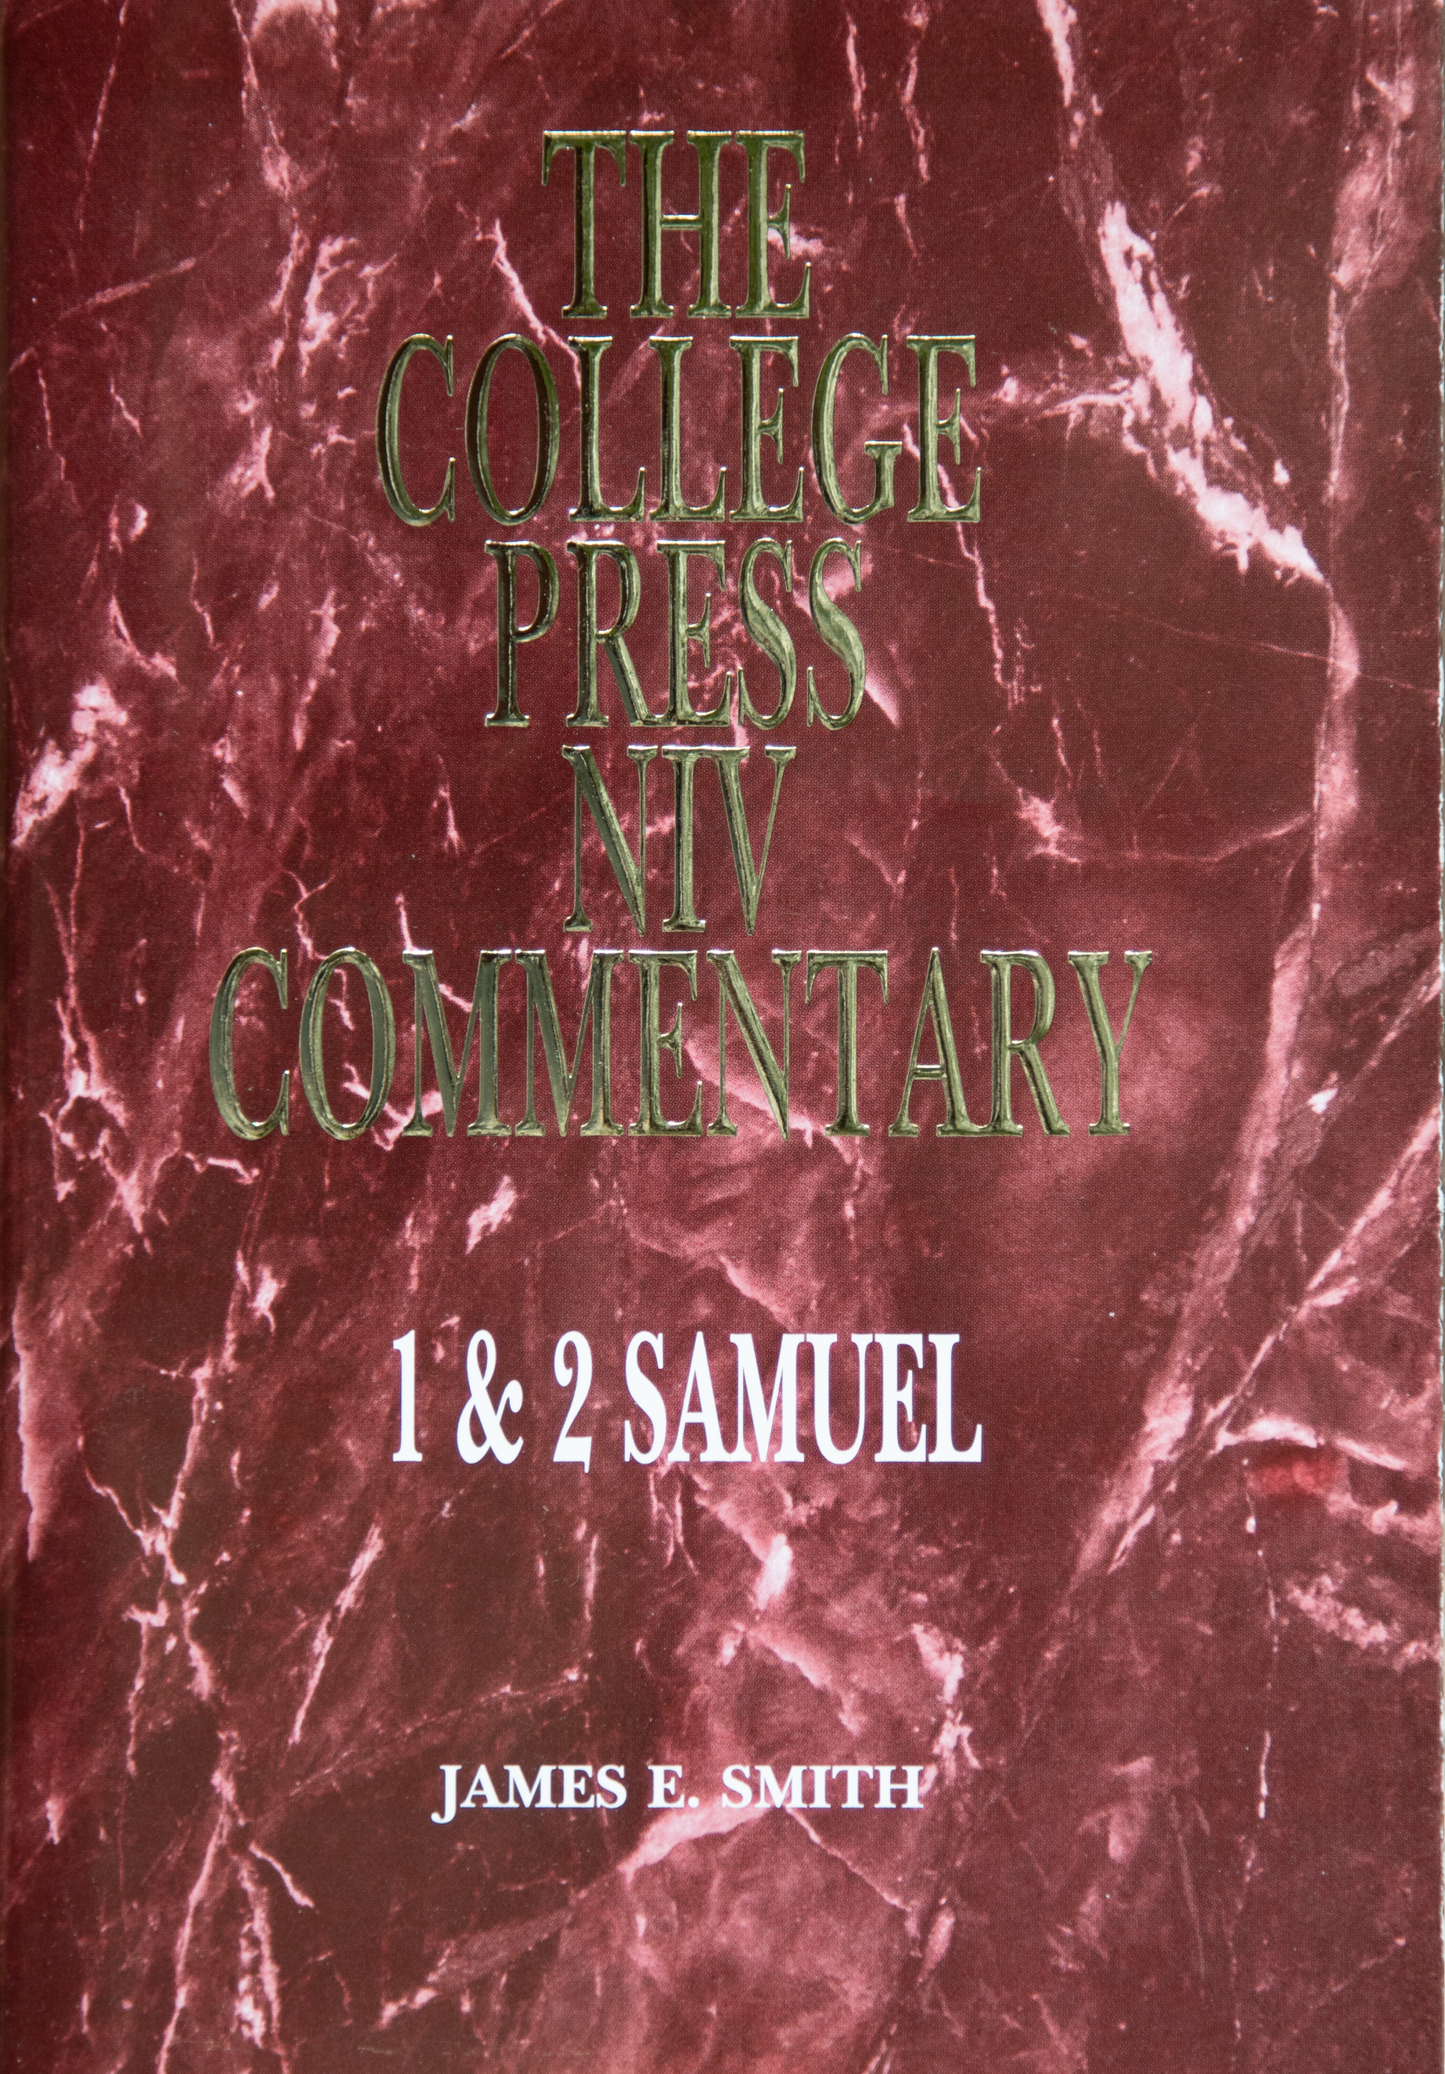 1 & 2 Samuel - NIV